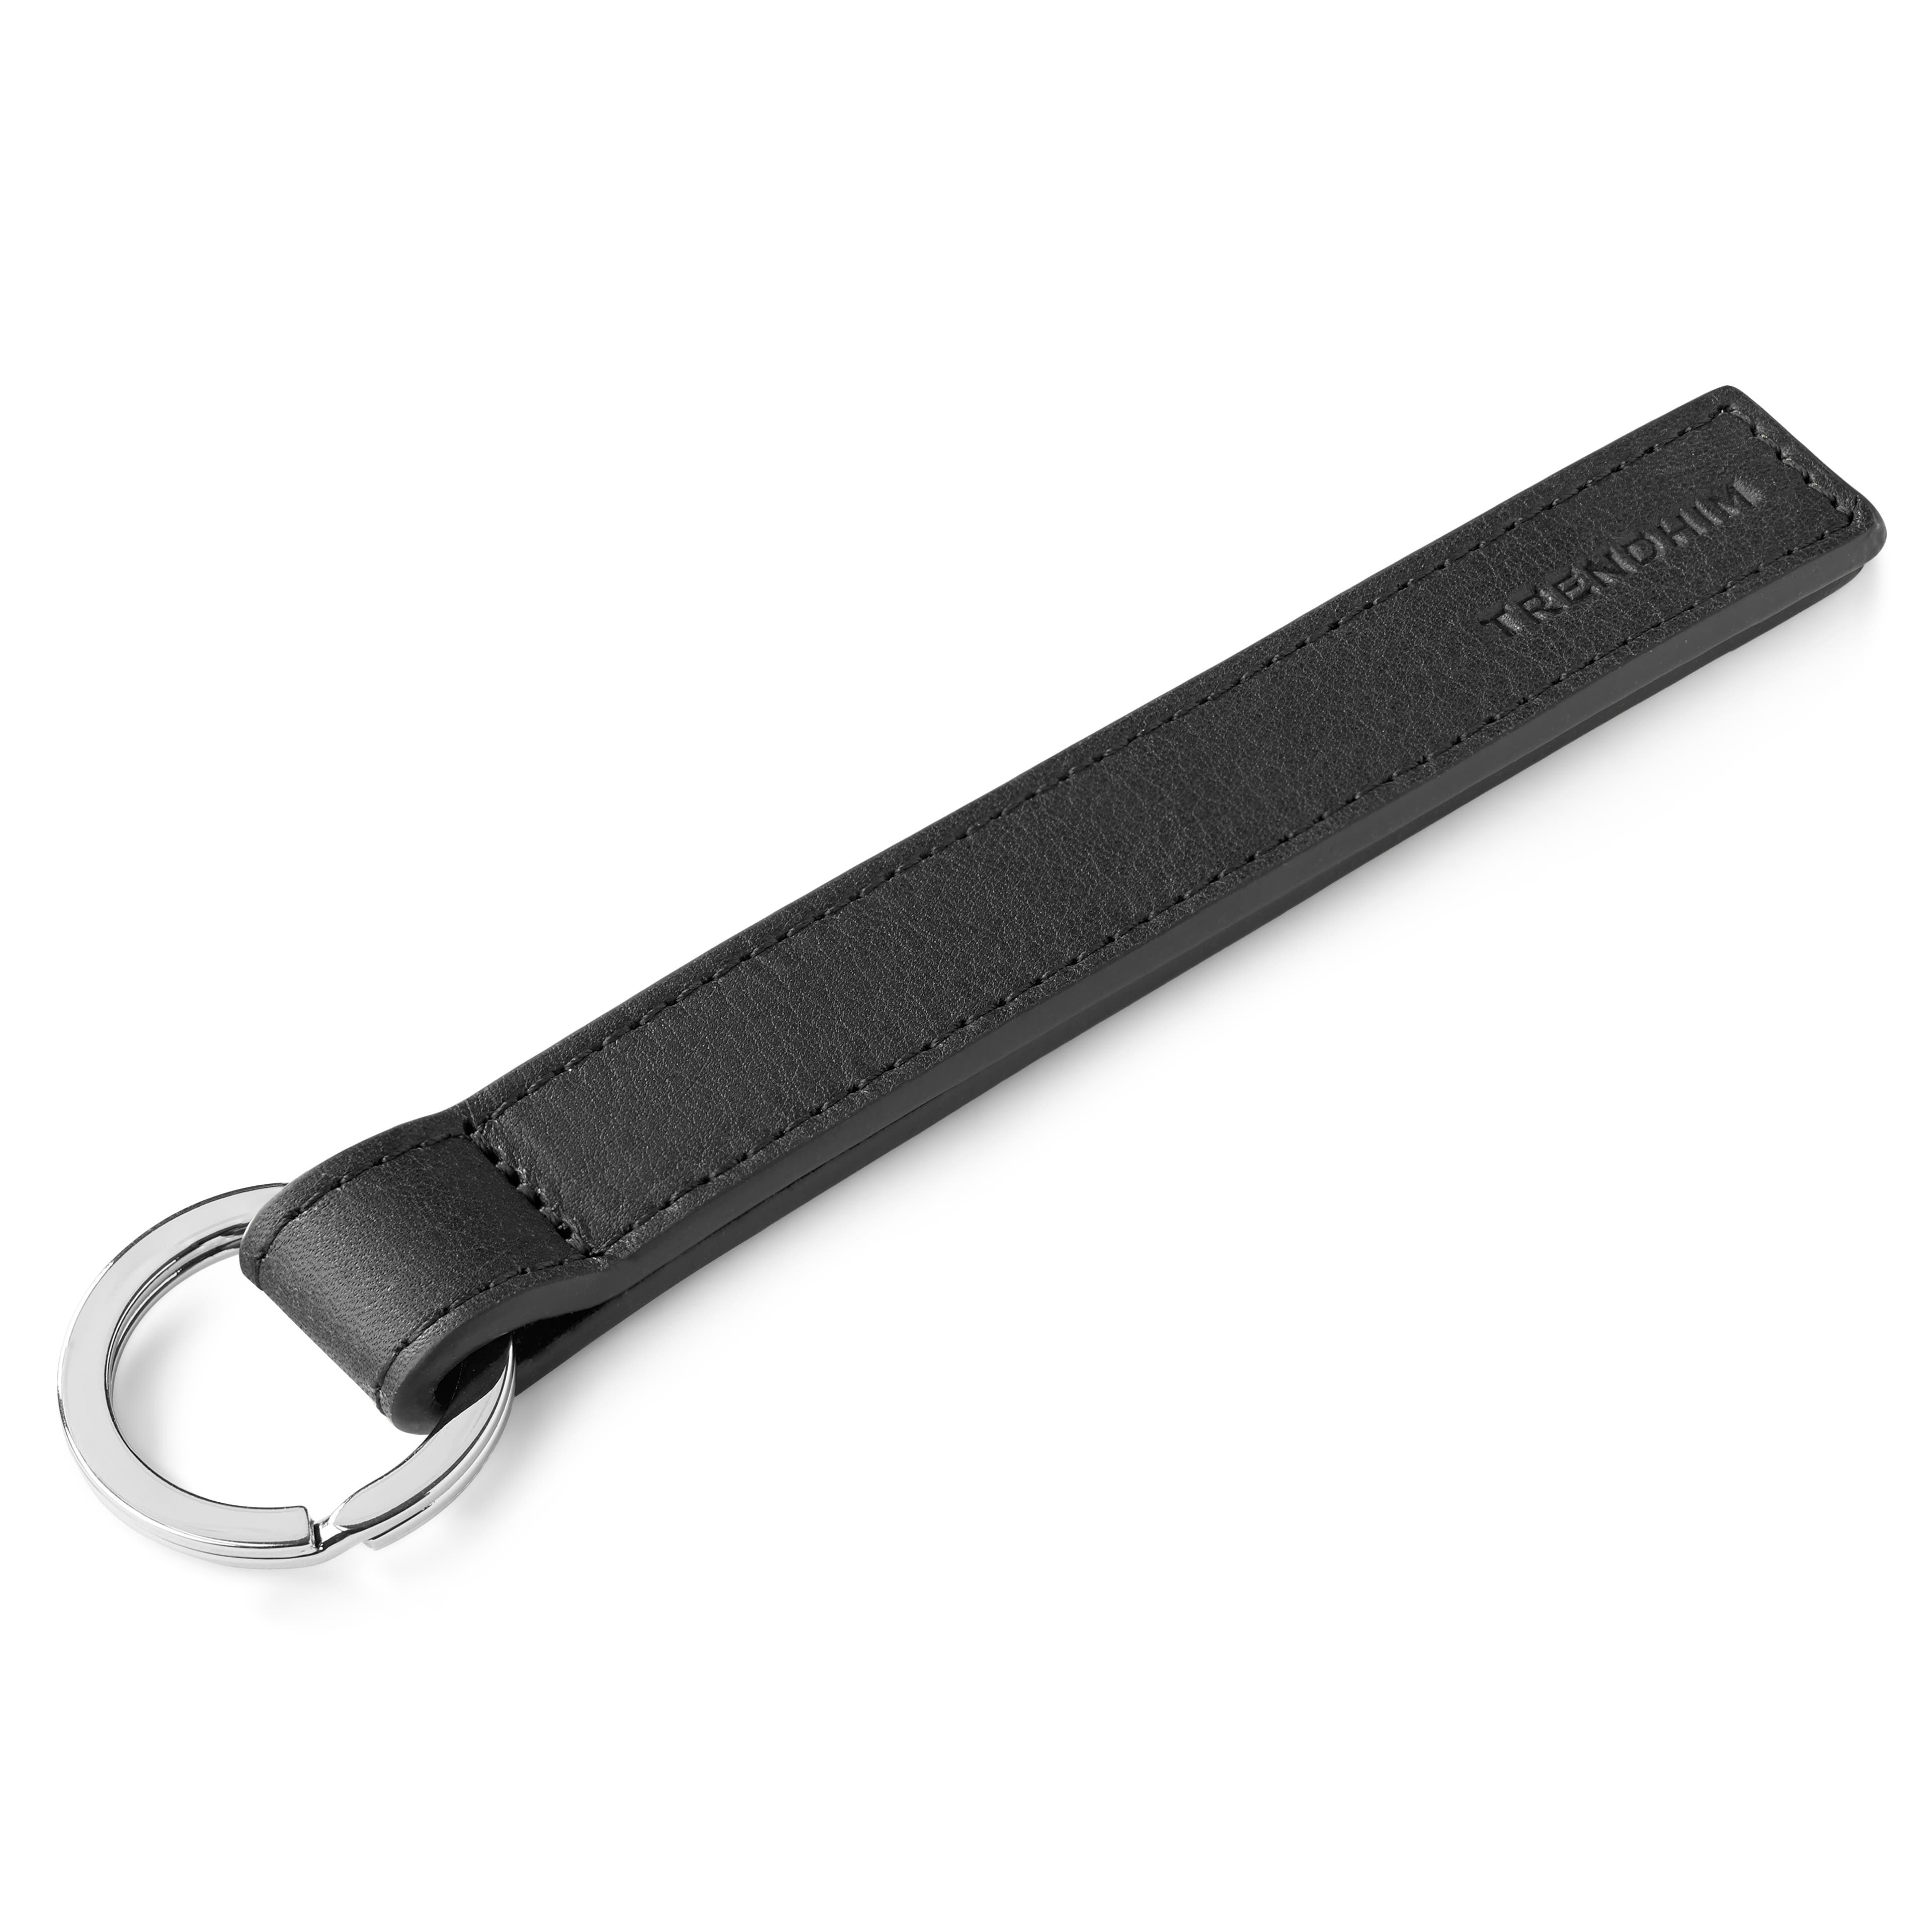 Porte-clés en cuir noir à boucle métallique